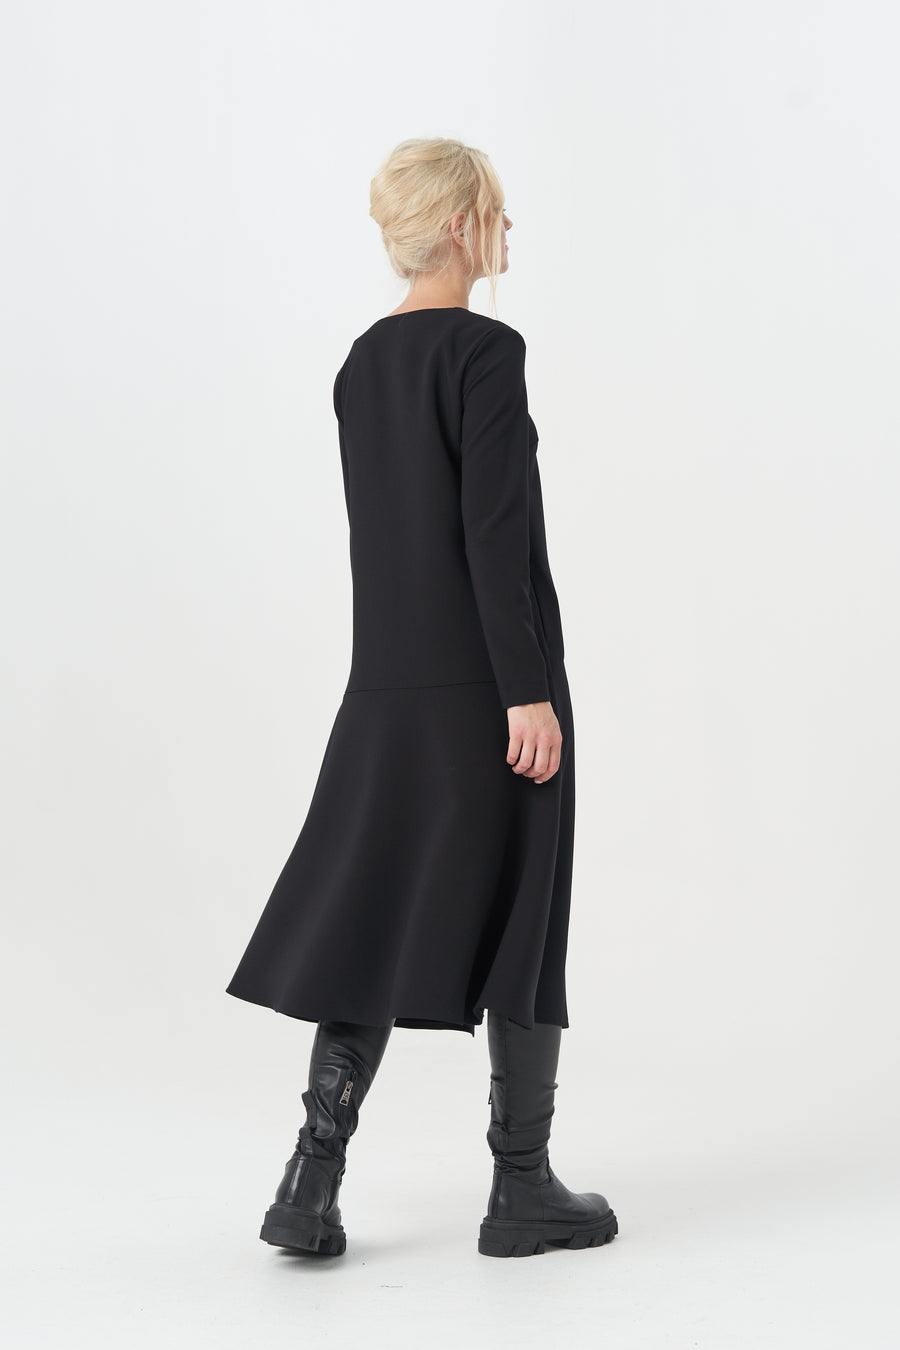 CAROLINE-2 BLACK DRESS